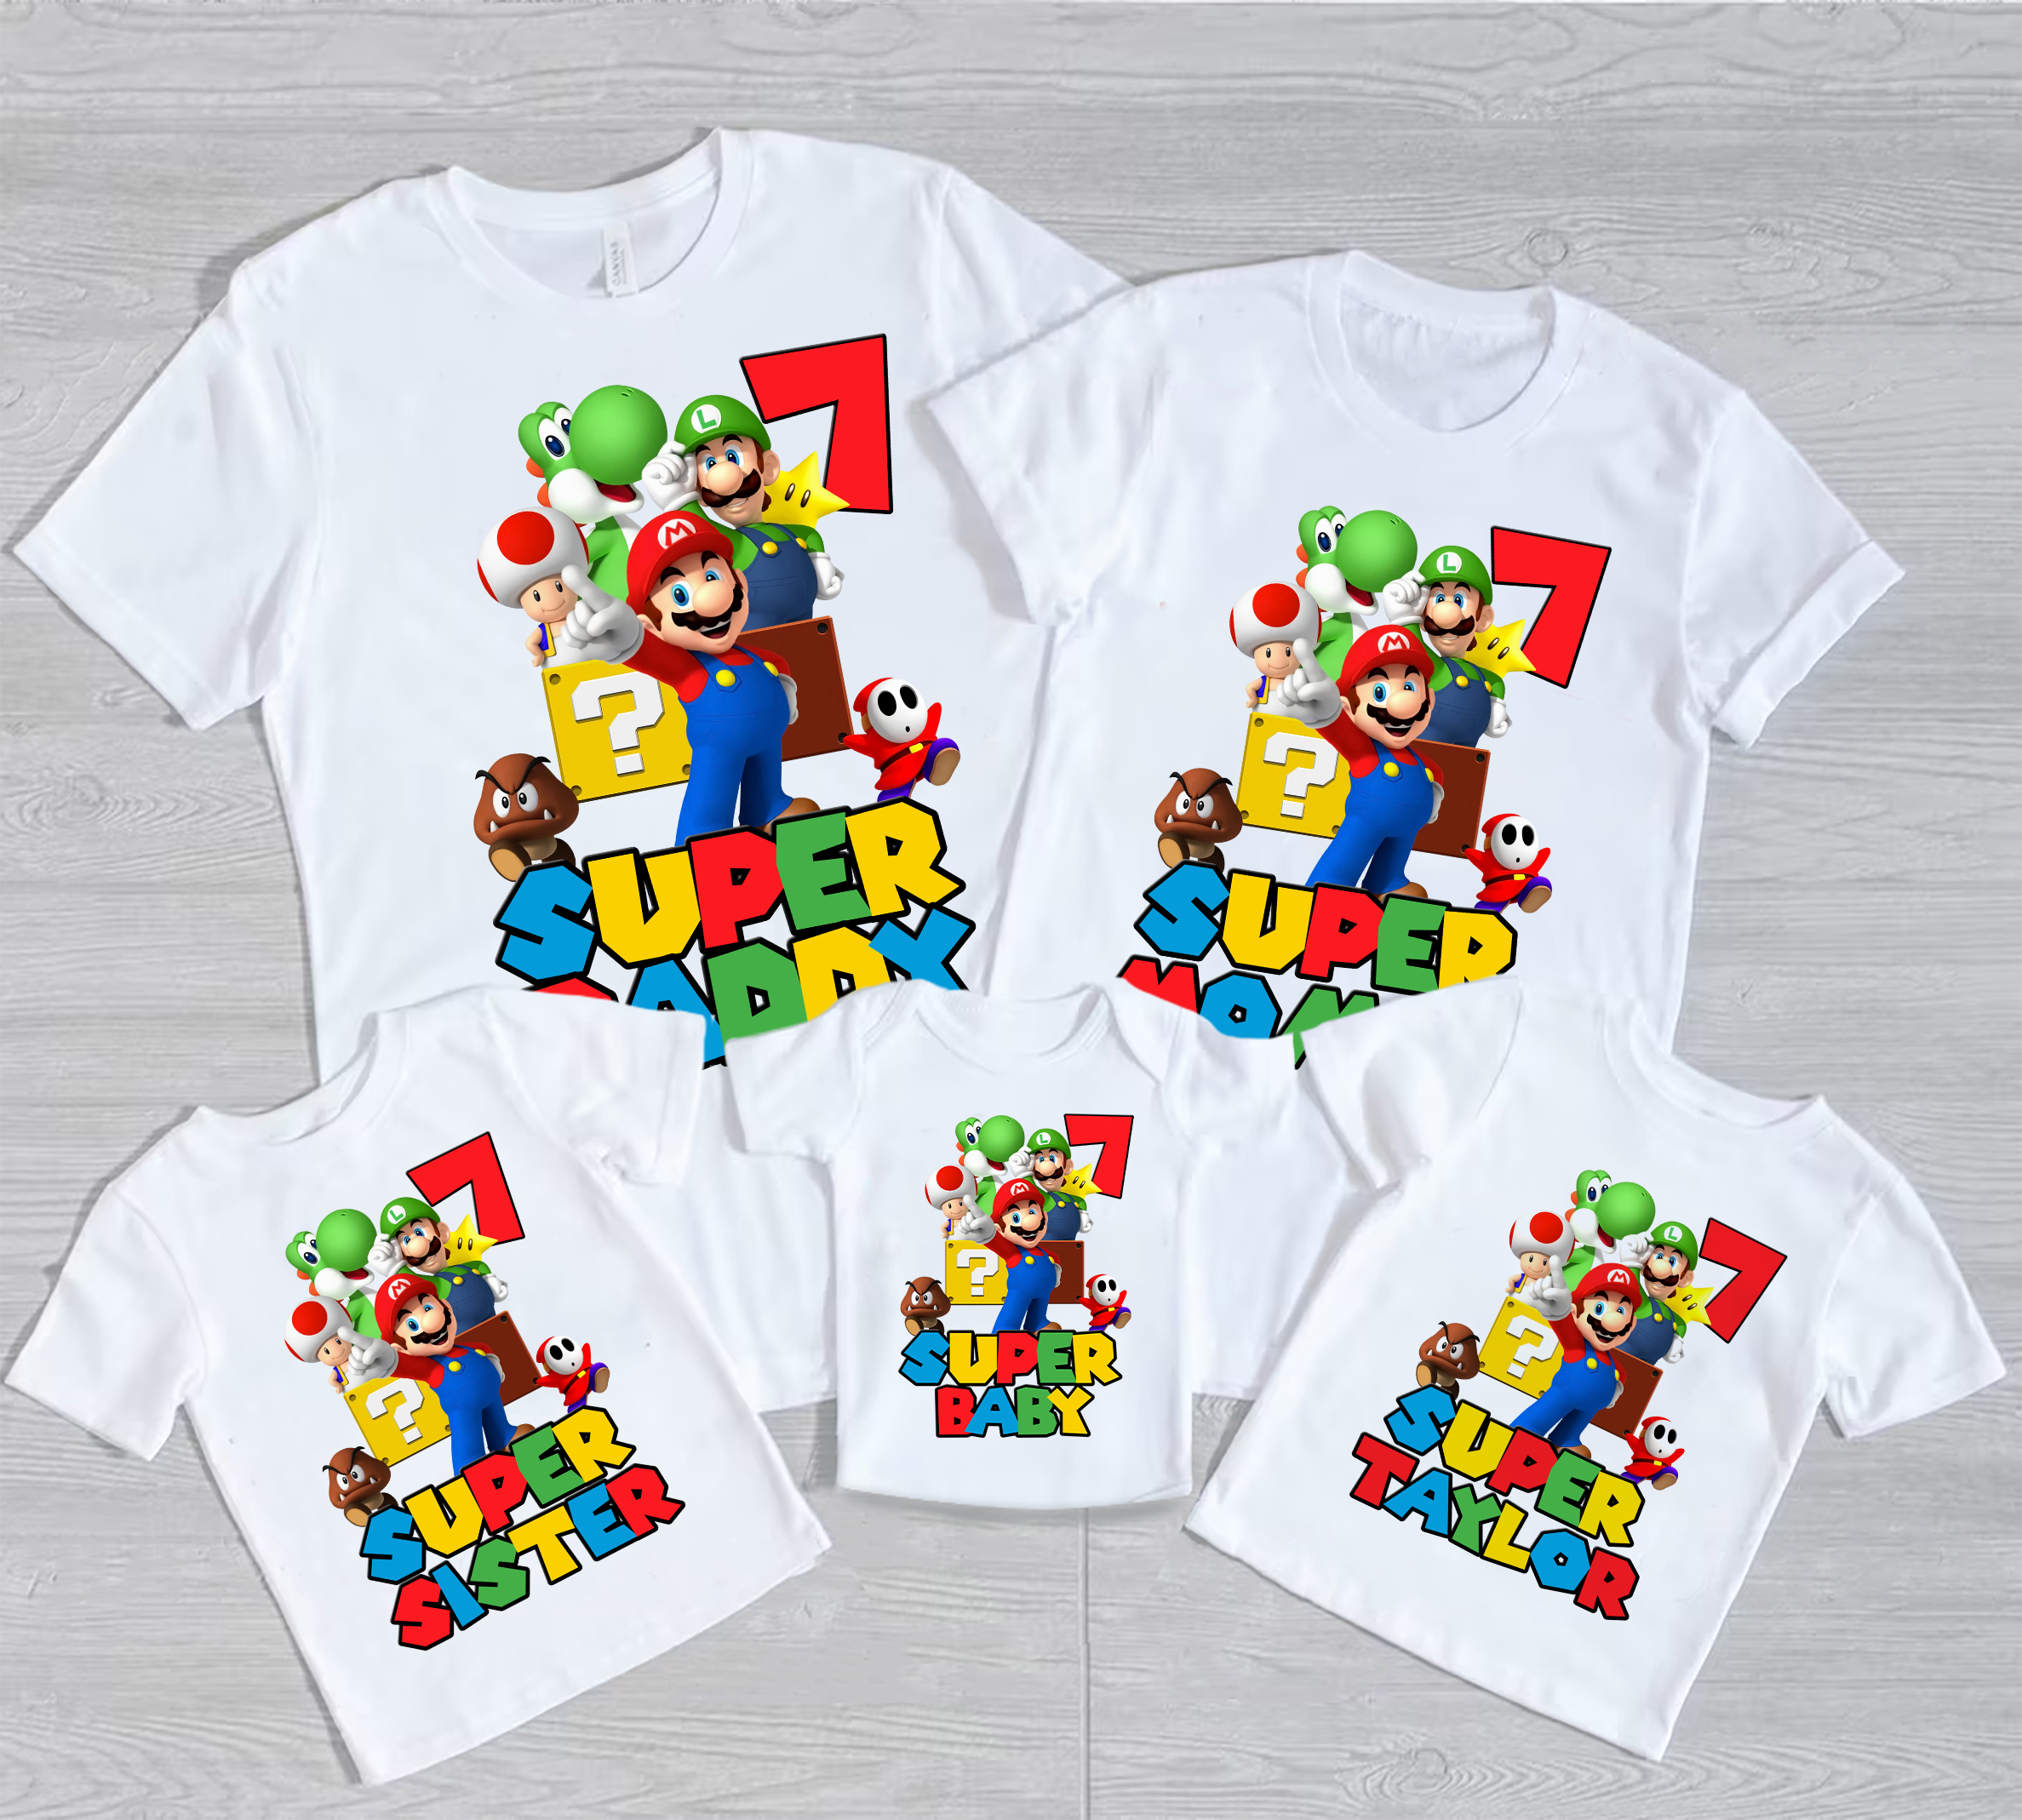 Personalized Super Mario Birthday Shirt Custom Super Set Mario Shirt Mario Personalized Shirt Super Mario Party Shirt Mario Kids Birthday Shirt